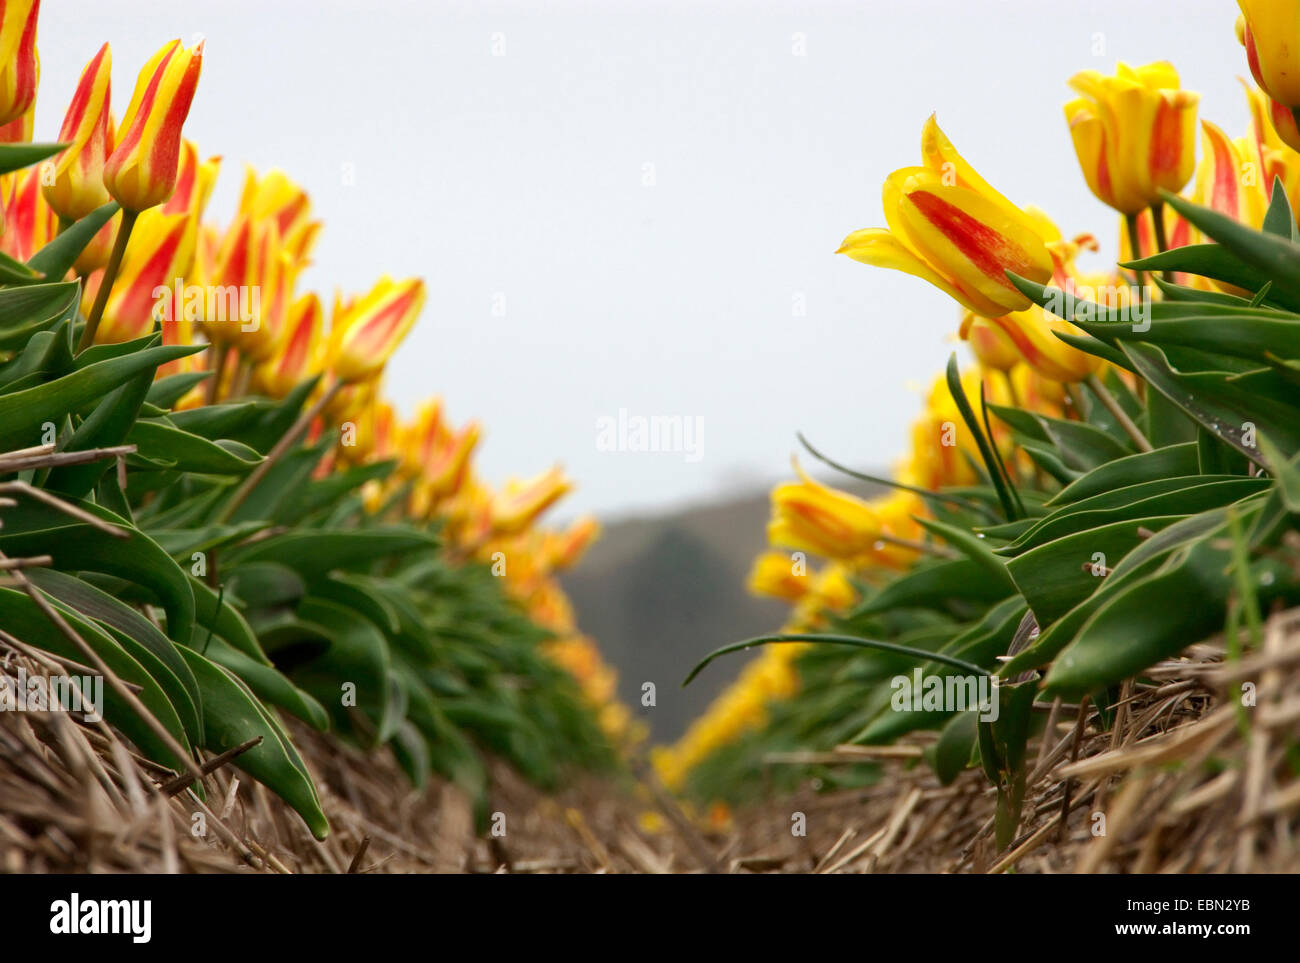 common garden tulip (Tulipa gesneriana), tulip field, Netherlands Stock Photo